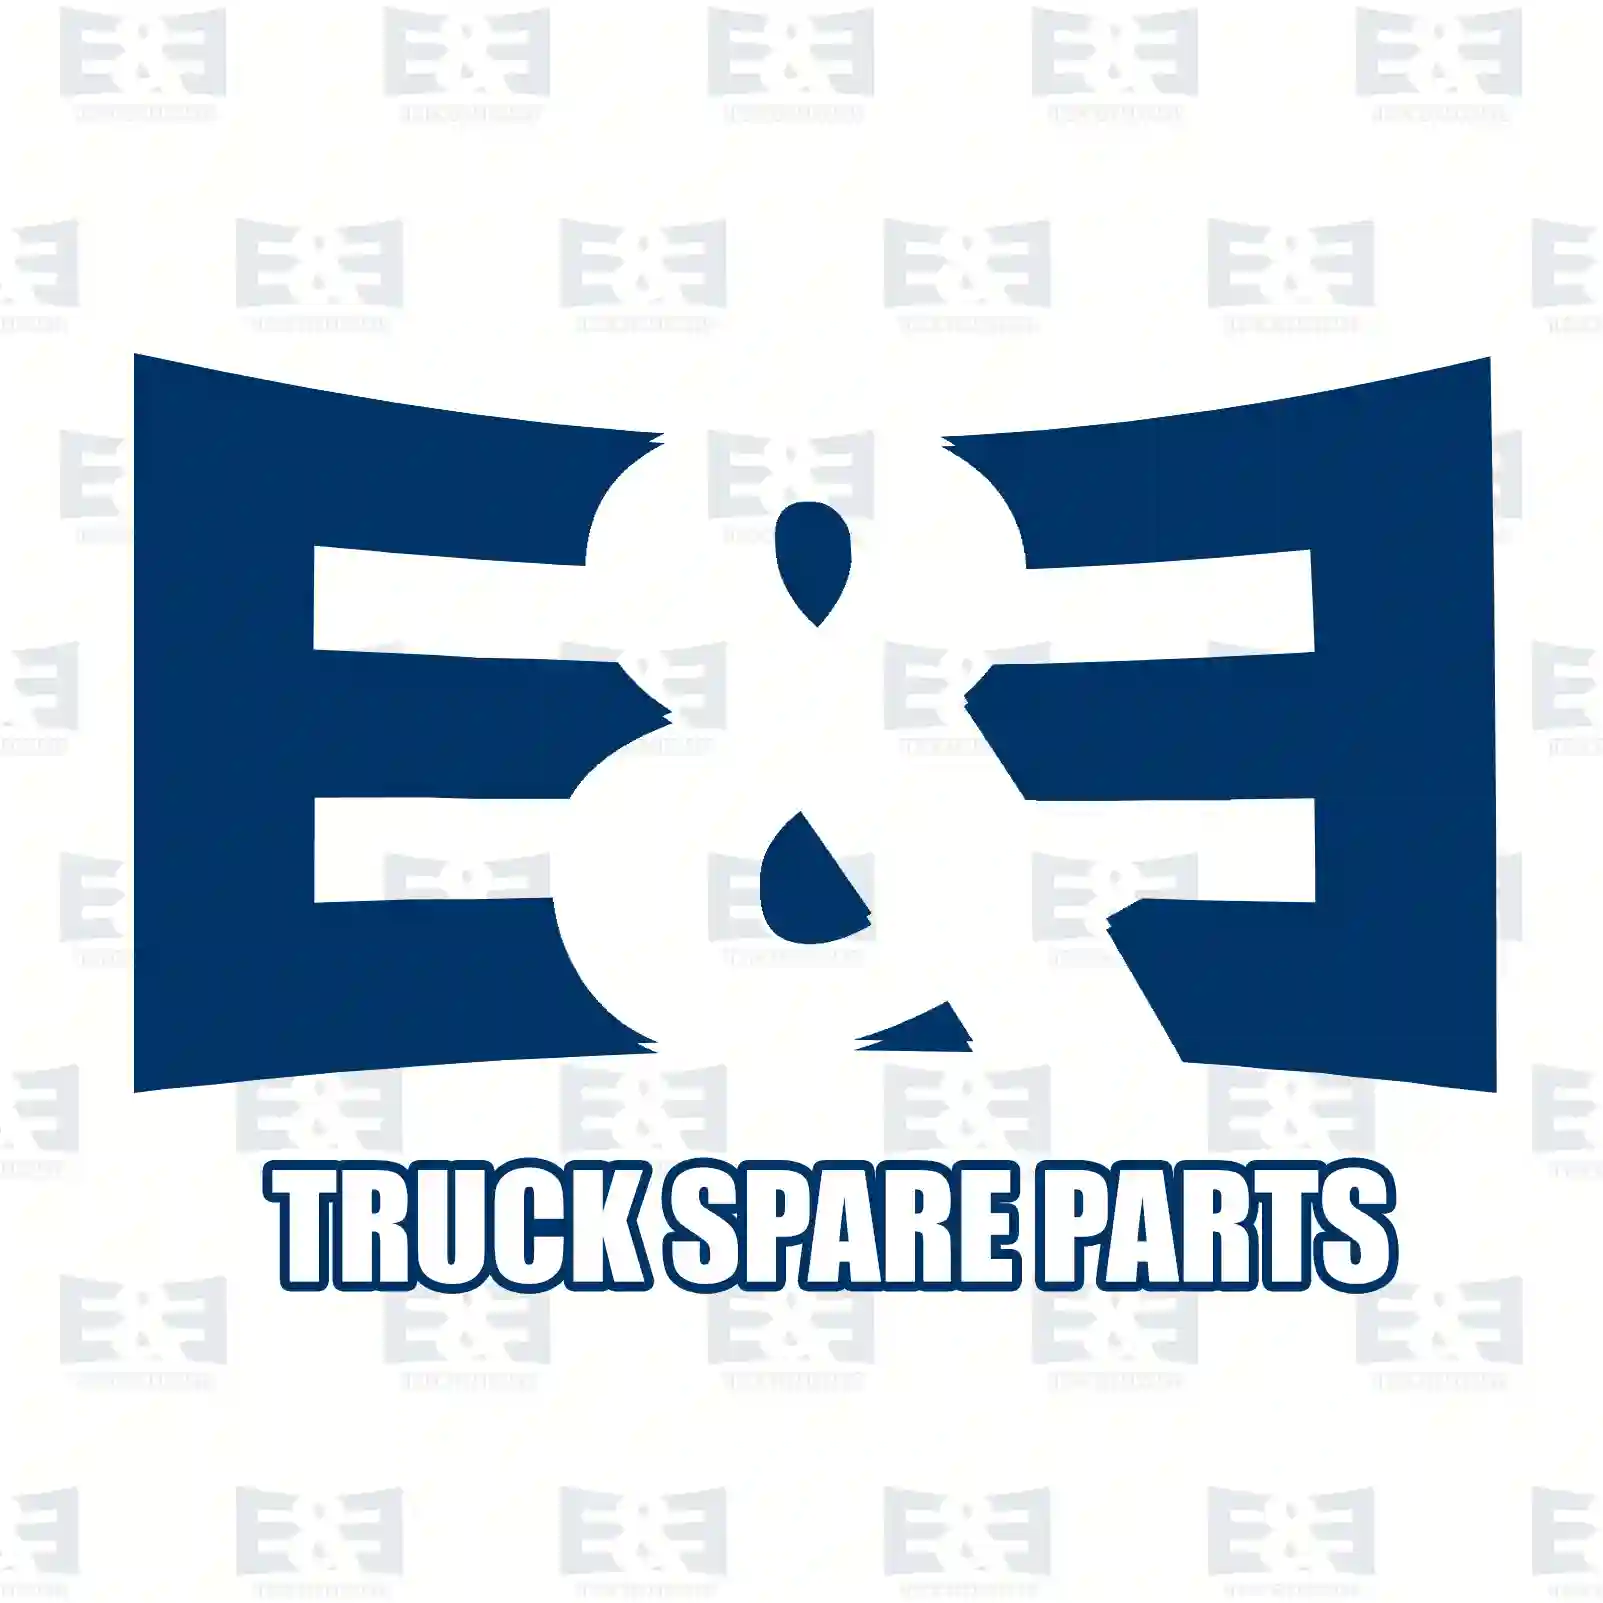 Shifting unit, 2E2278899, 21456389, 21937984, 22647926 ||  2E2278899 E&E Truck Spare Parts | Truck Spare Parts, Auotomotive Spare Parts Shifting unit, 2E2278899, 21456389, 21937984, 22647926 ||  2E2278899 E&E Truck Spare Parts | Truck Spare Parts, Auotomotive Spare Parts